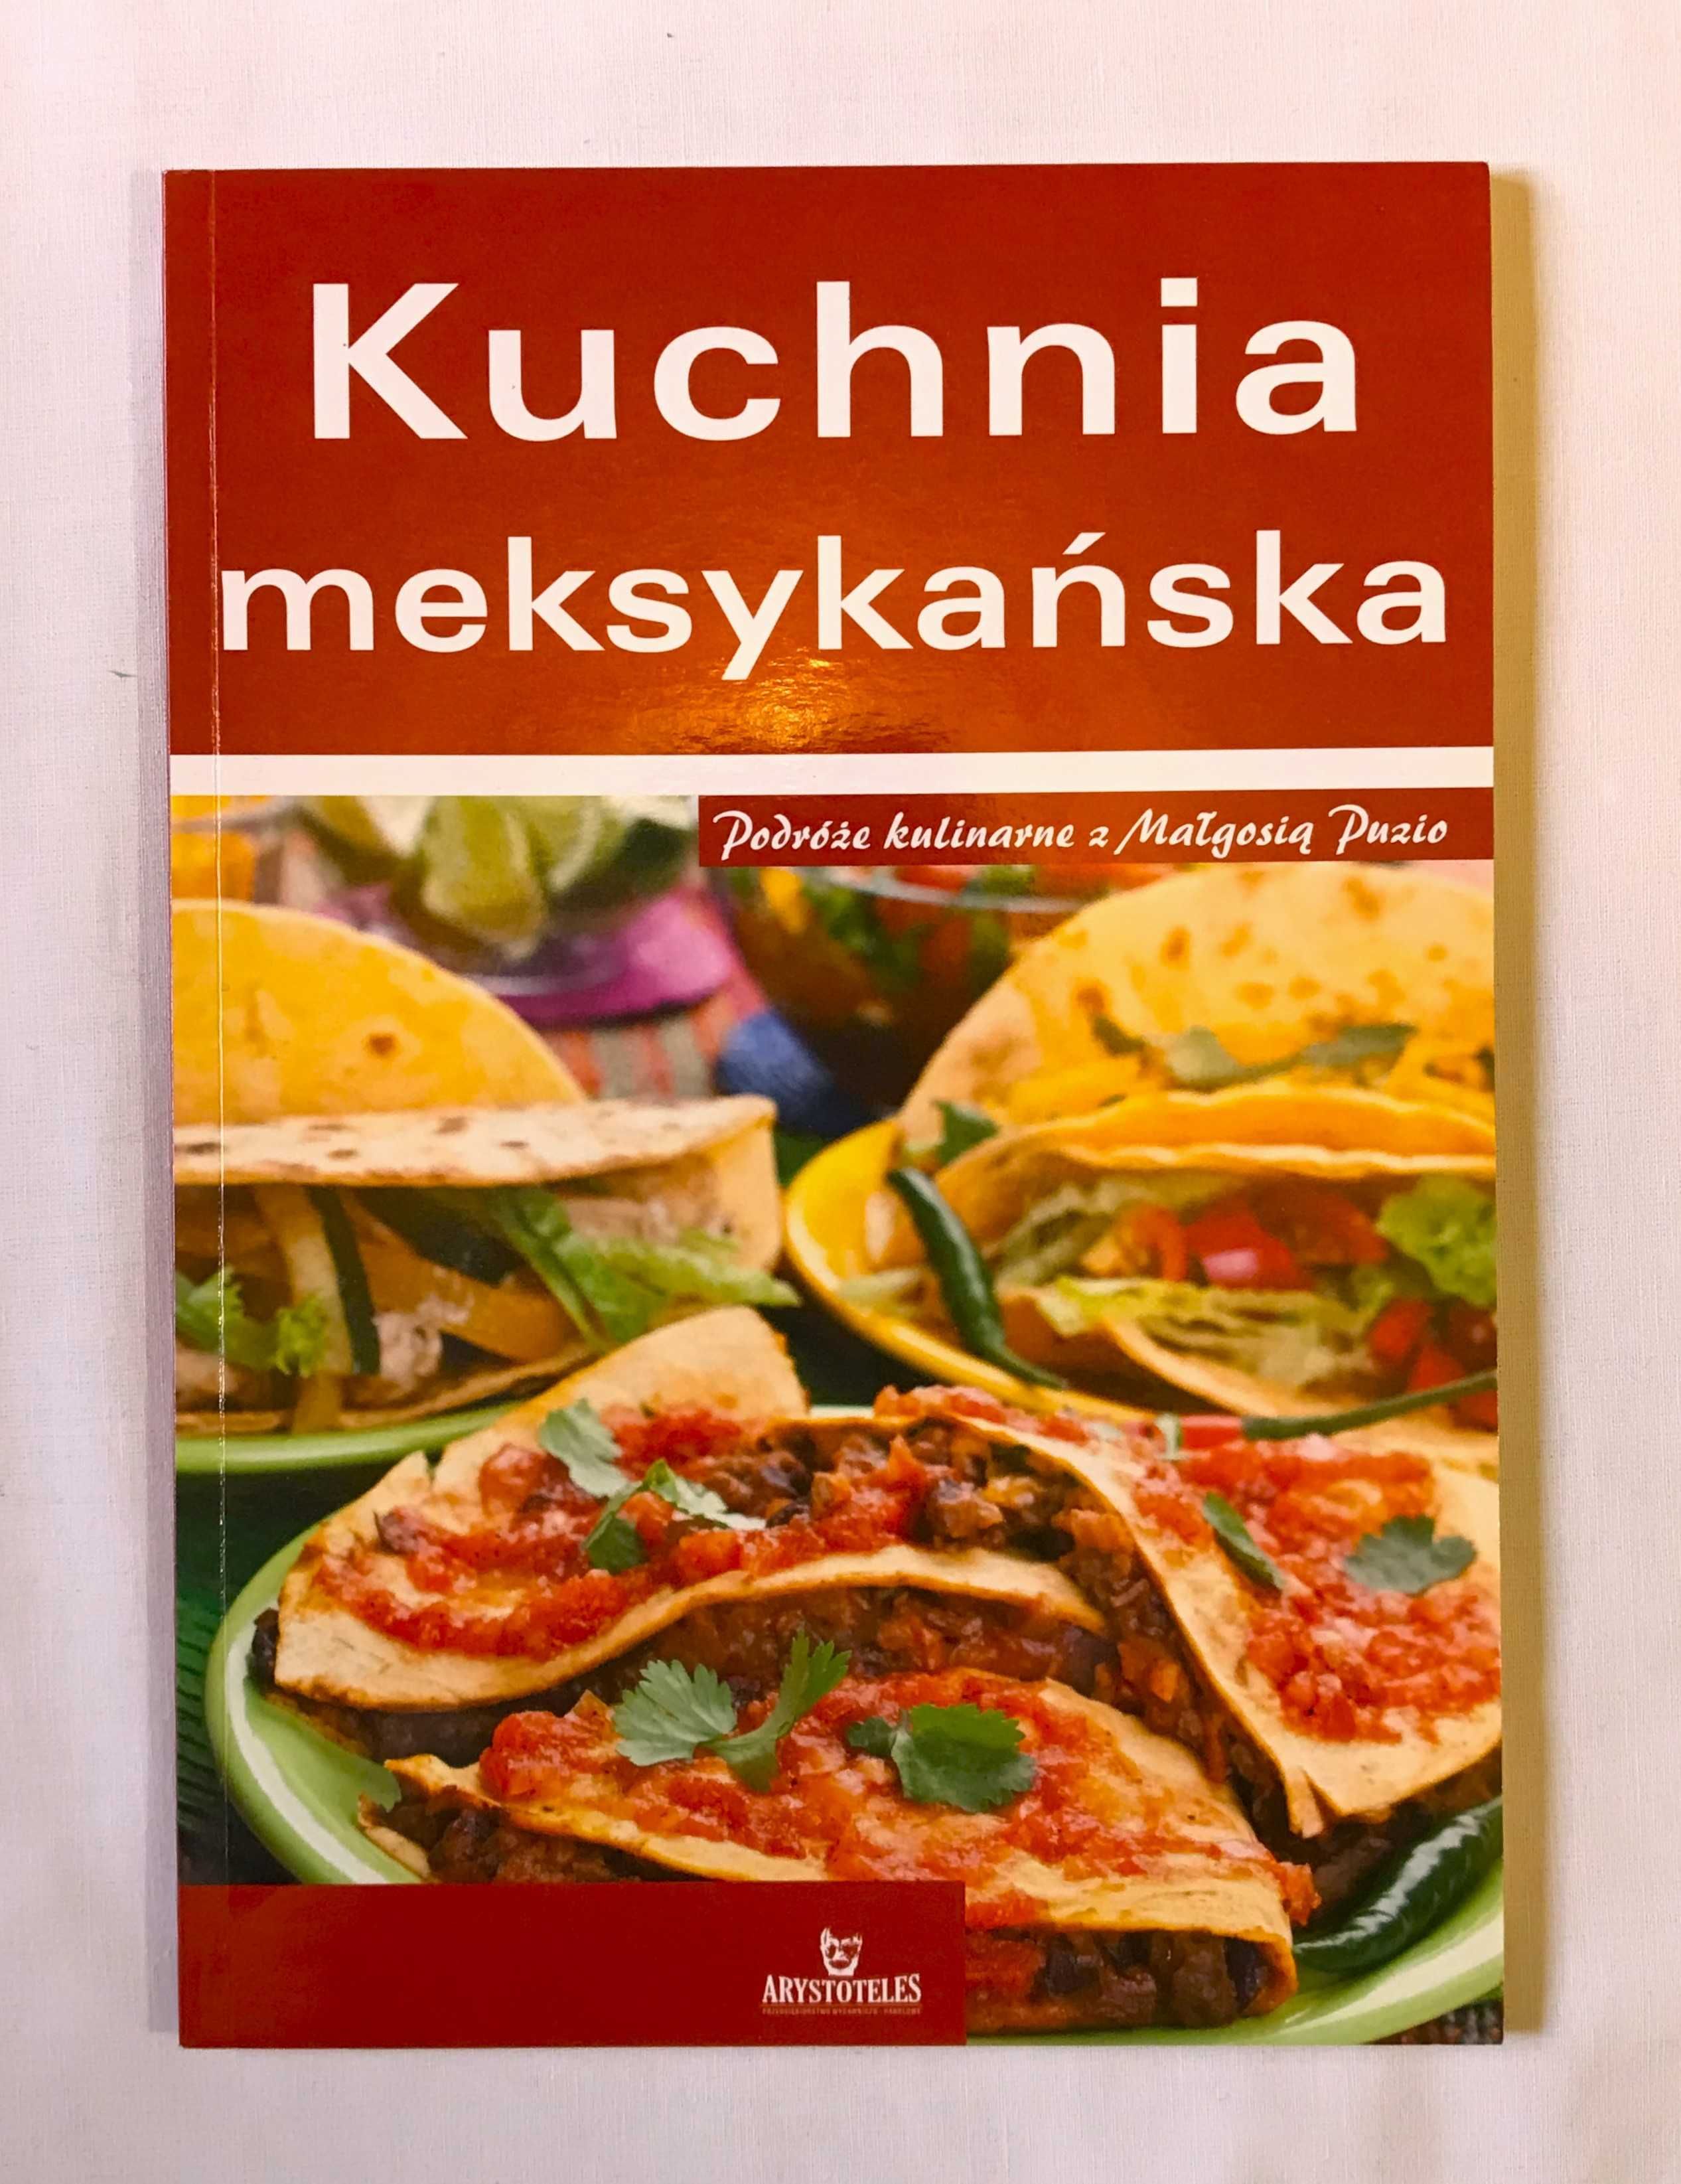 książka kucharska kuchnia meksykańska m. puzio i. glińska przepisy